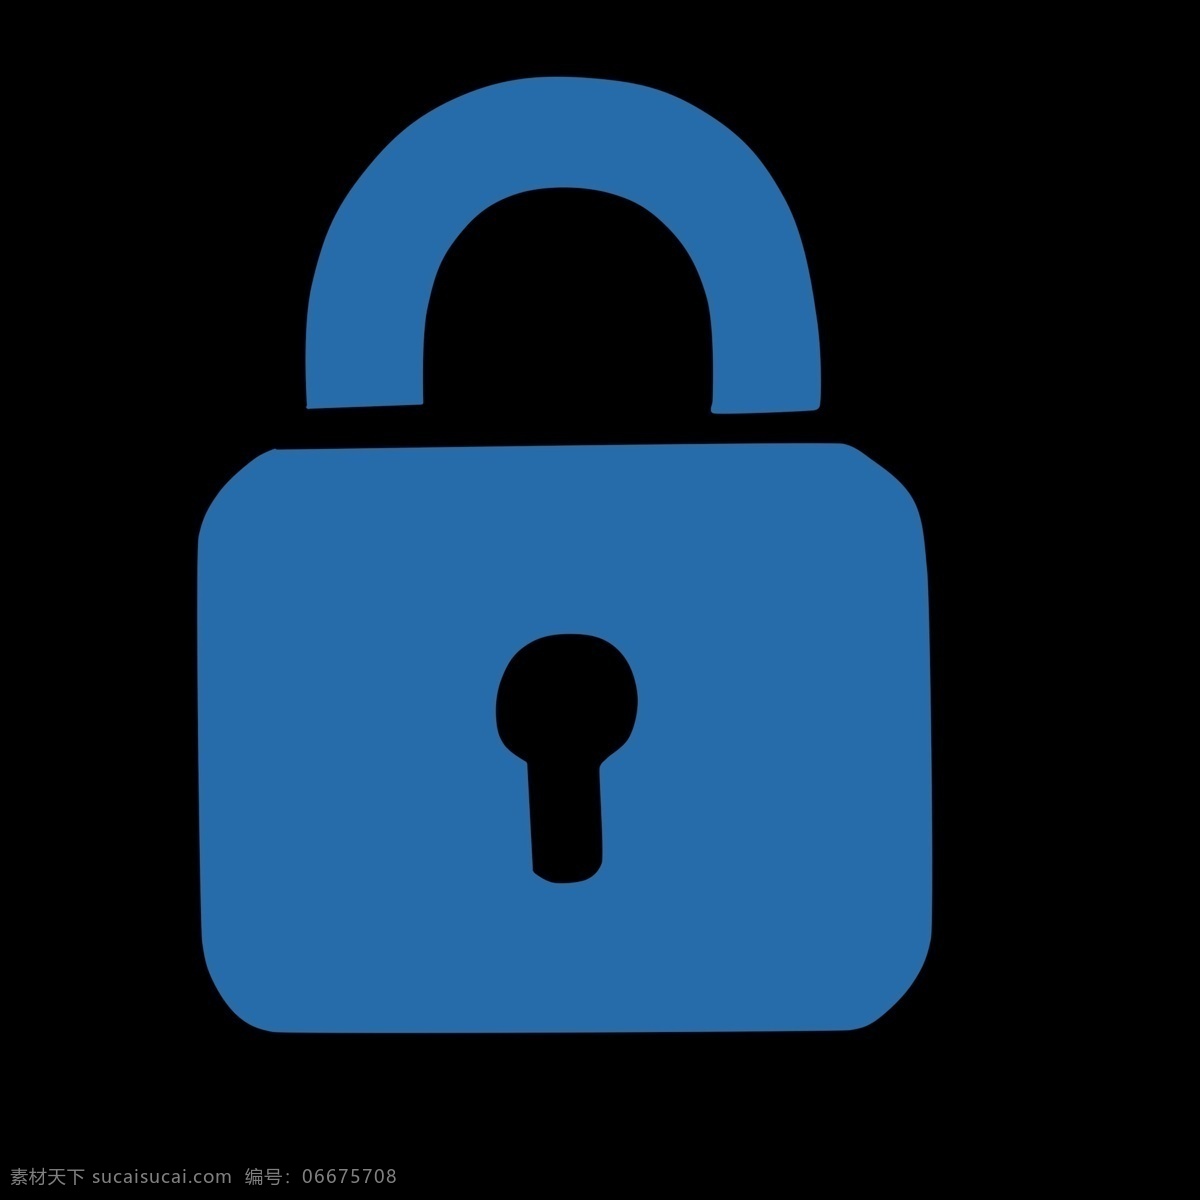 锁具 蓝色 标志 图形 装饰 png格式